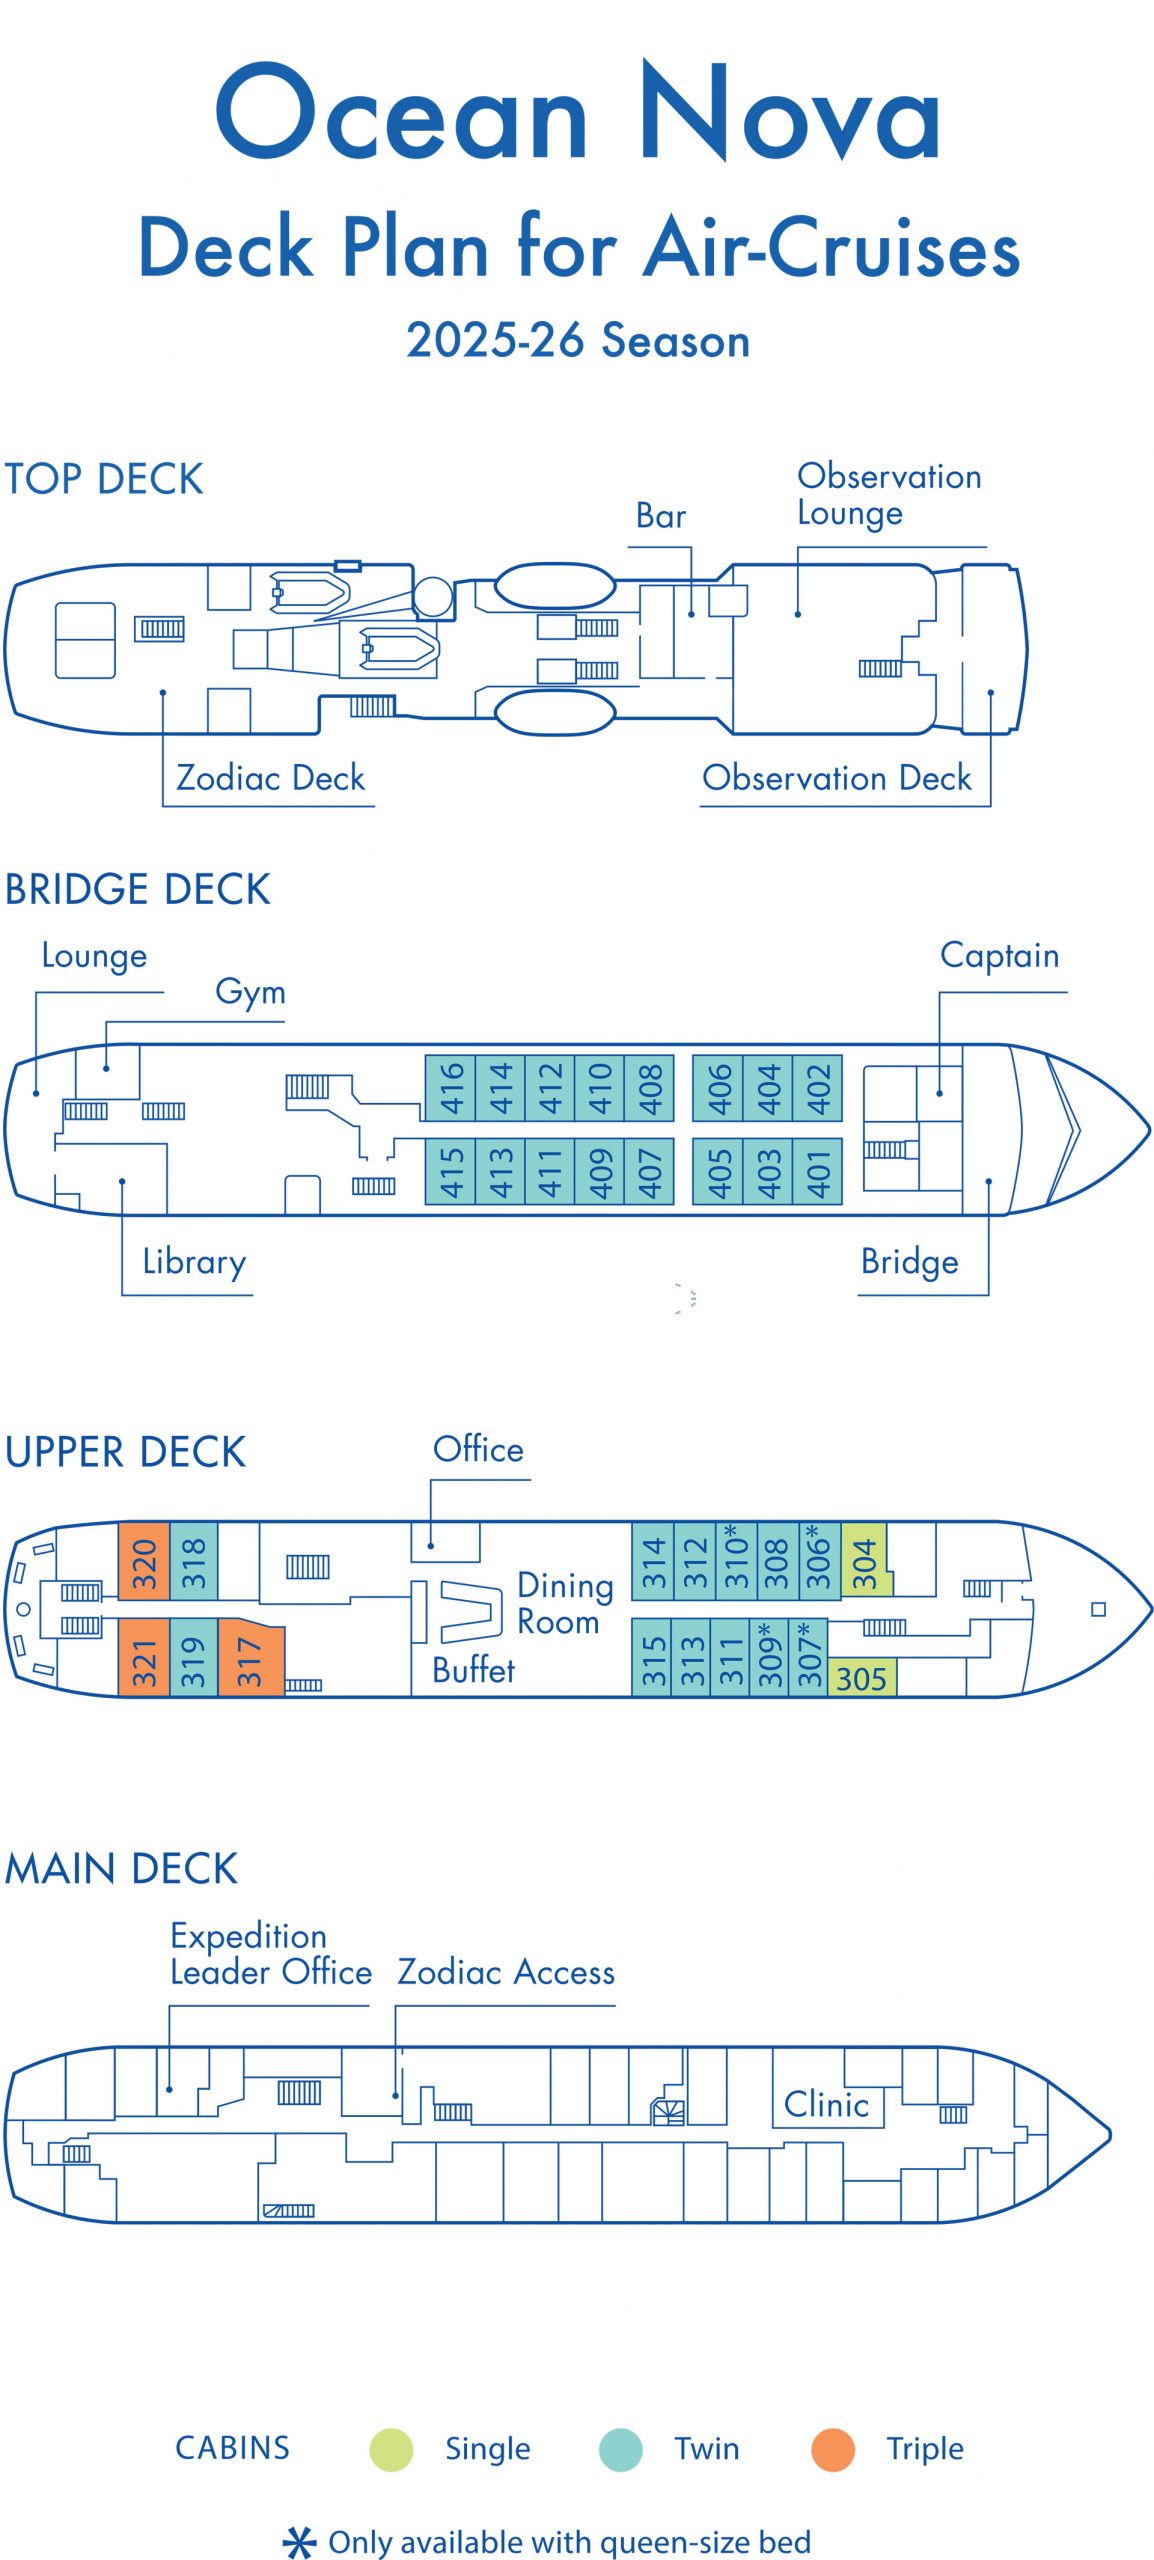 2025-2026 air cruises deck plan for polar ship Ocean Nova, showing capacity for 67 guests across 2 decks.